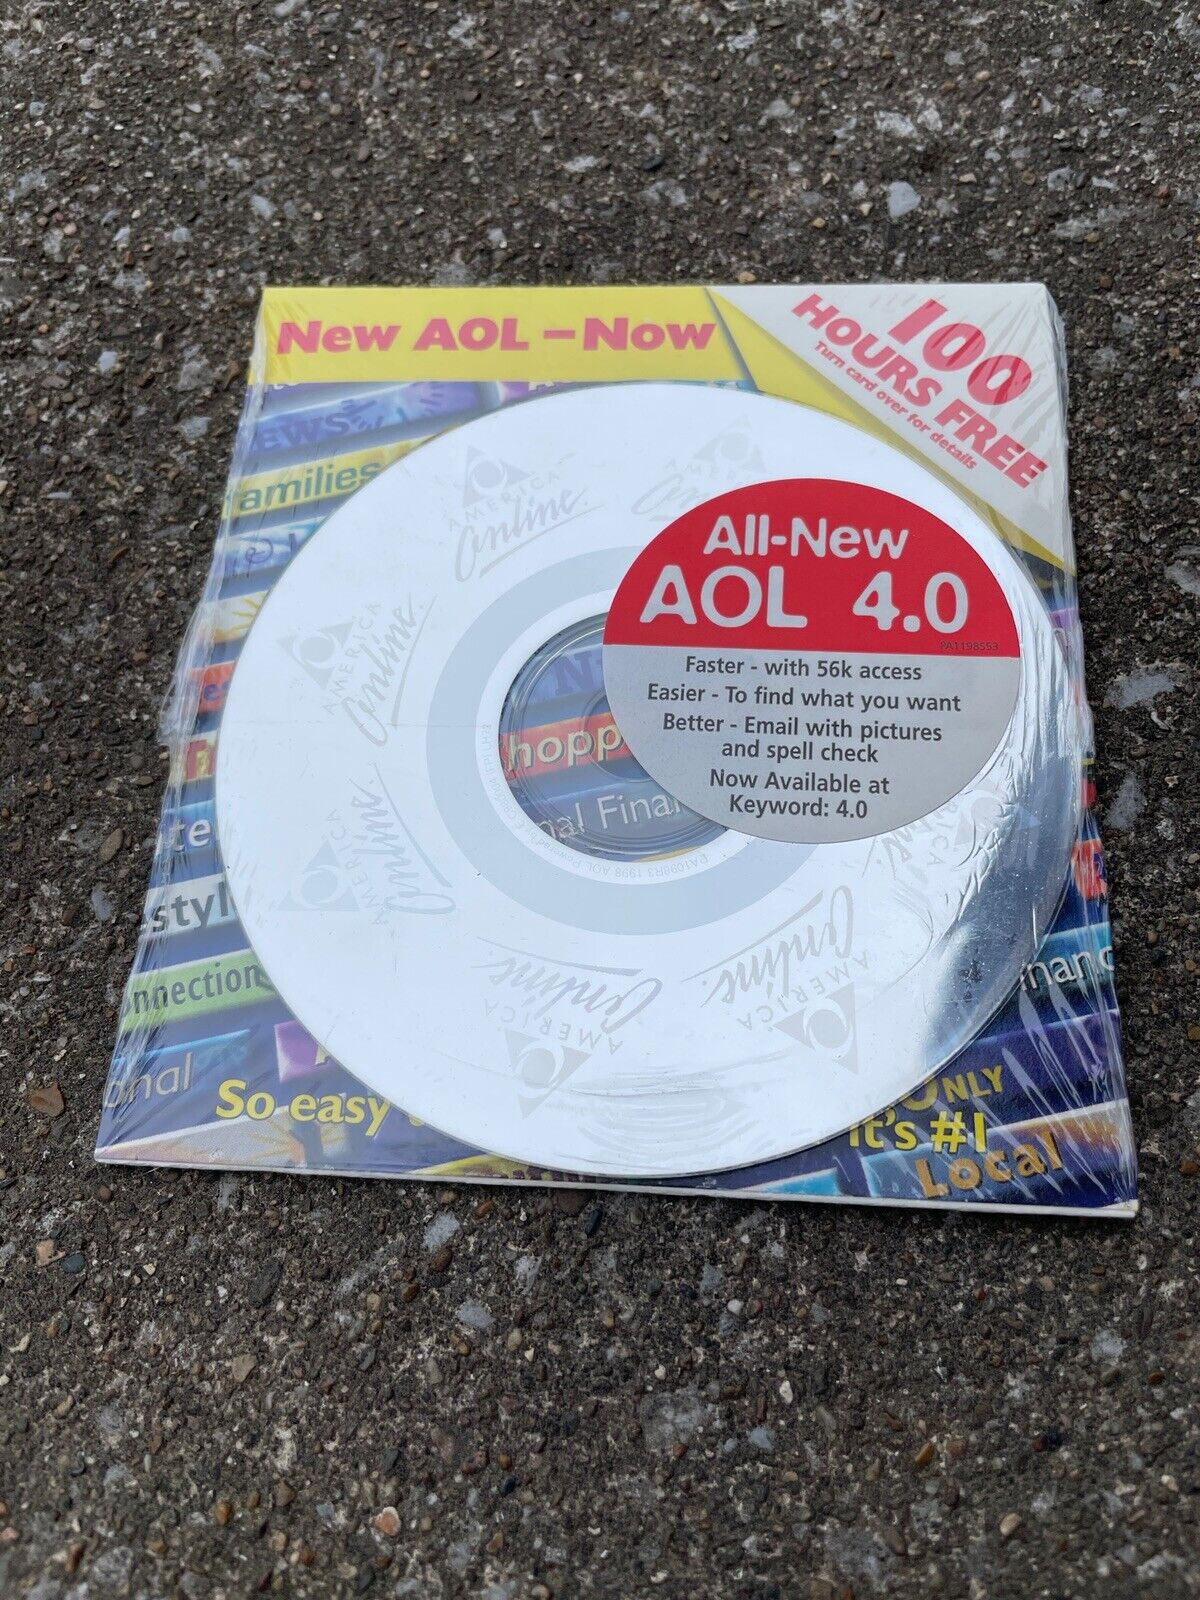 America Online AOL 4.0 CD SEALED Disc Vintage 90’s Internet